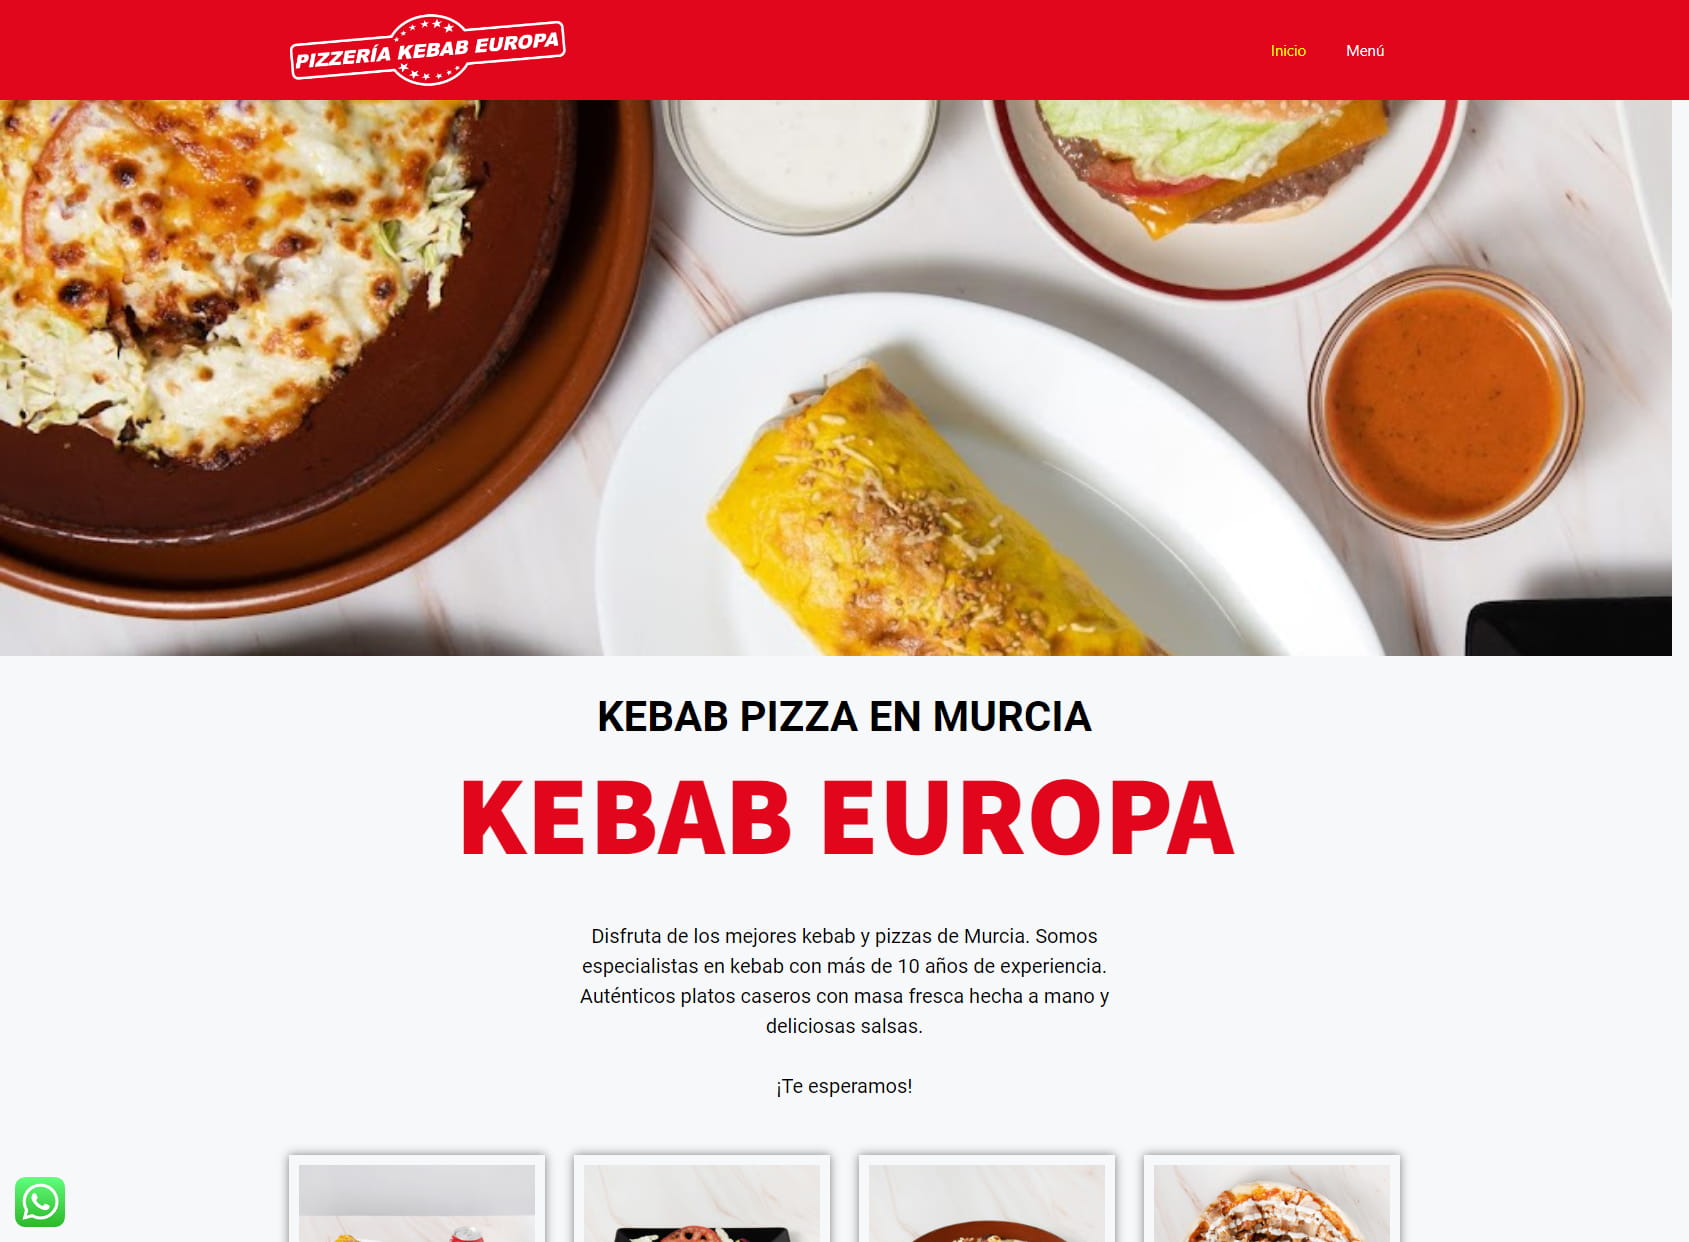 Kebab Europa